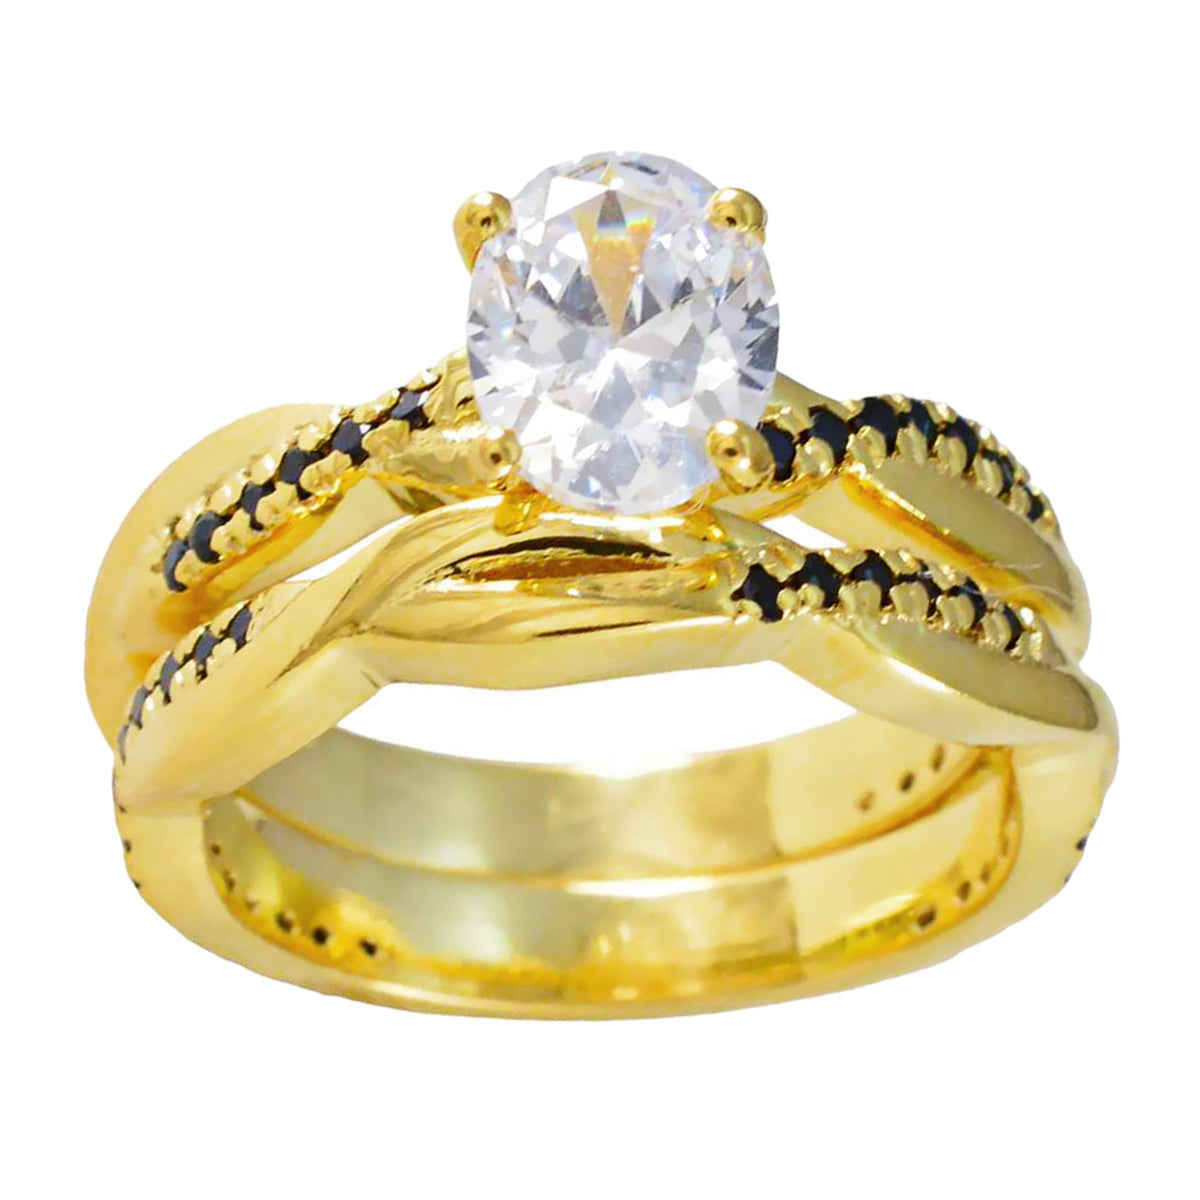 Anillo de plata riyo suppiler con chapado en oro amarillo, piedra de zafiro azul, ajuste de punta de forma ovalada, joyería nupcial, anillo del día del padre